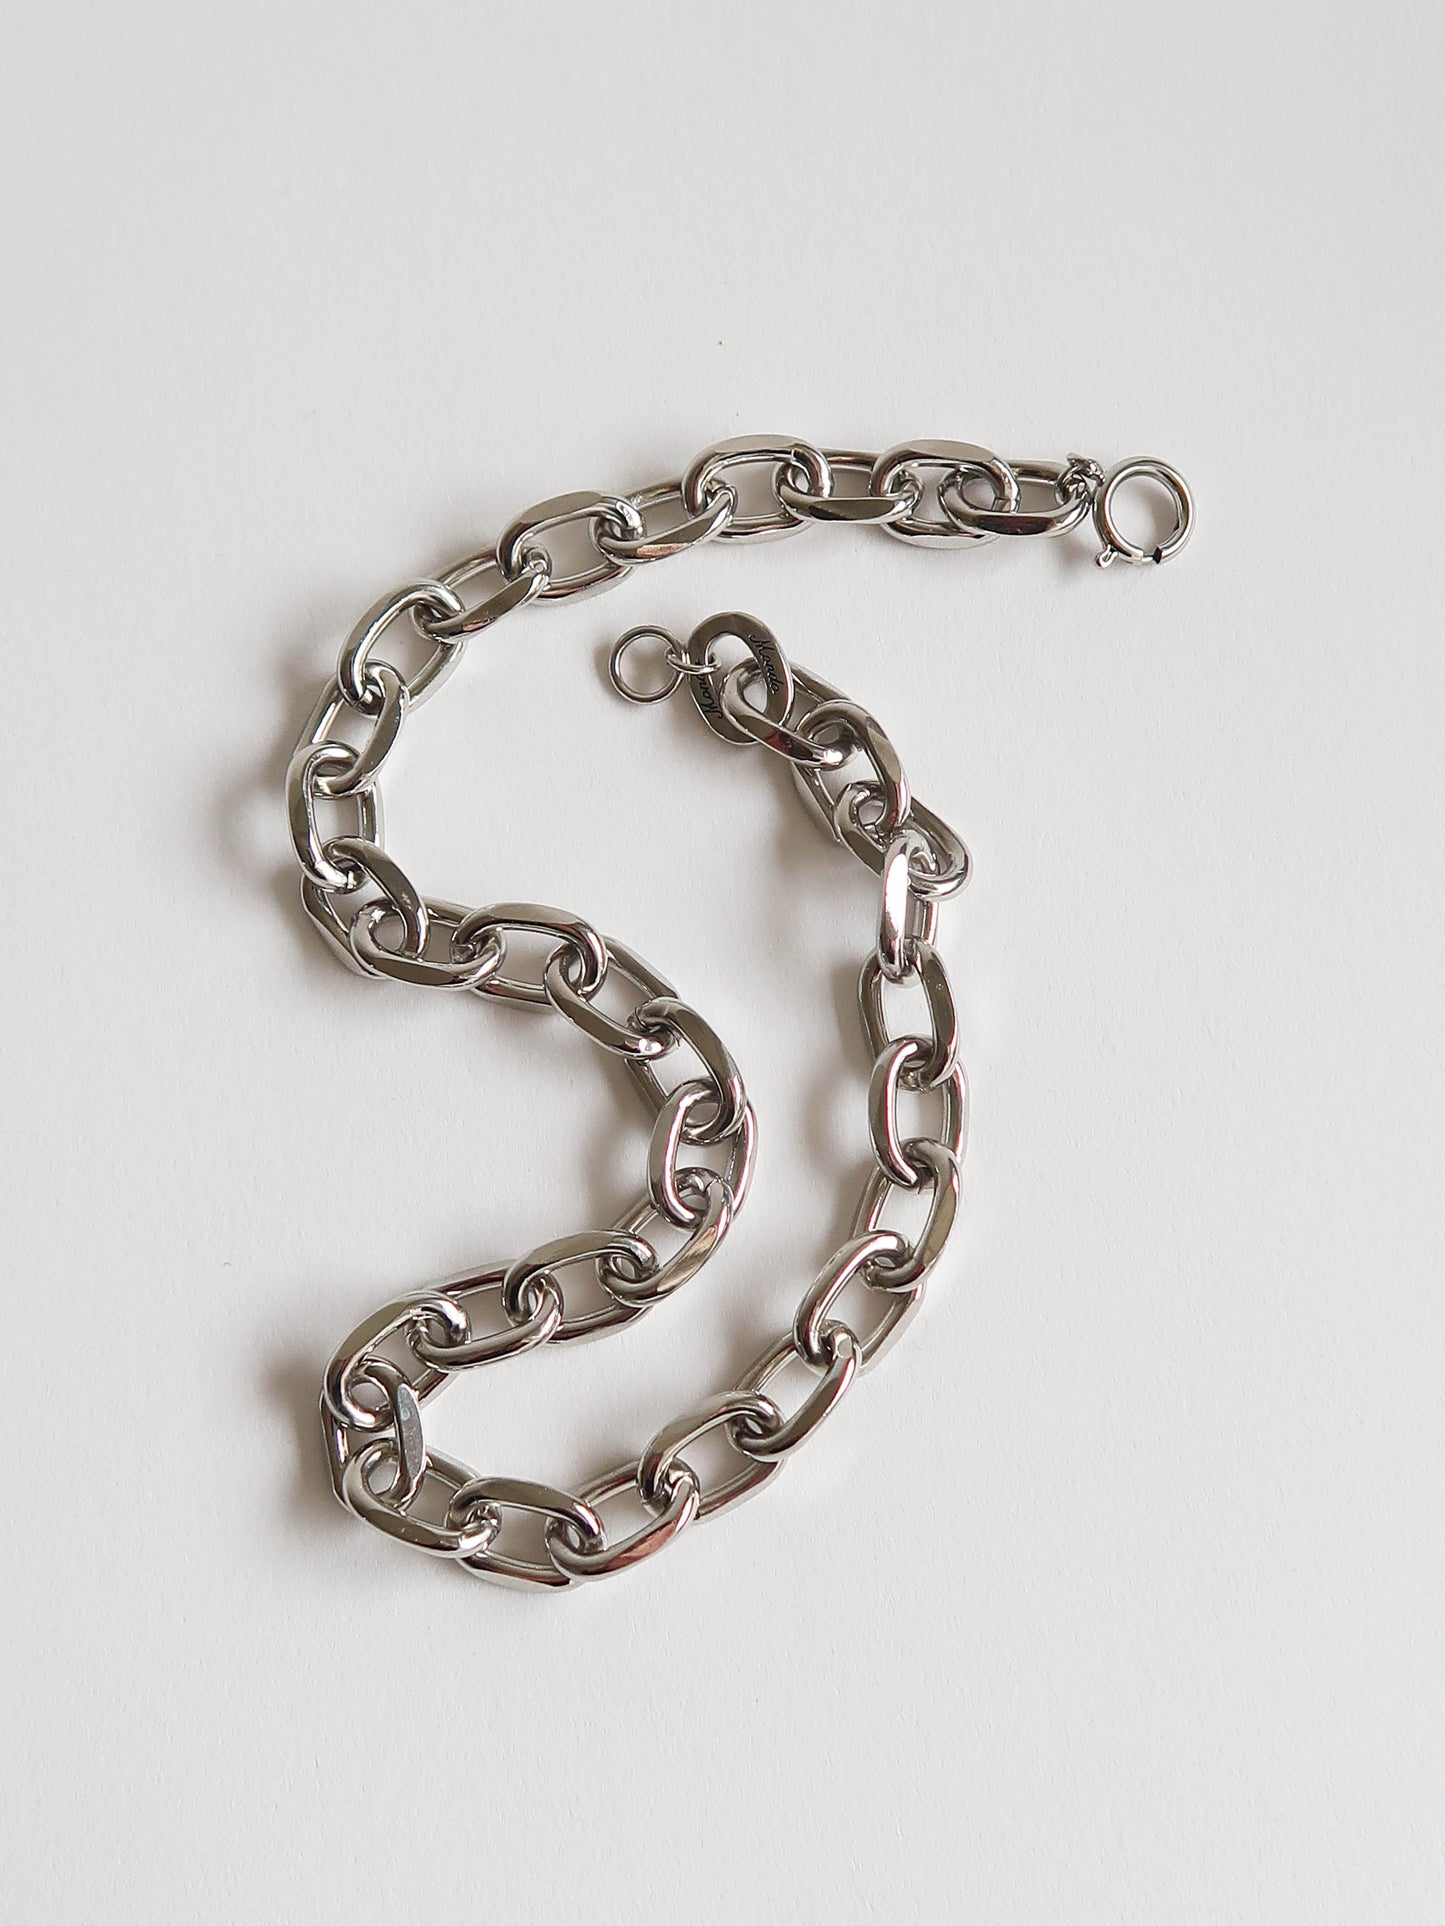 Moto Chain Necklace - White Bronze